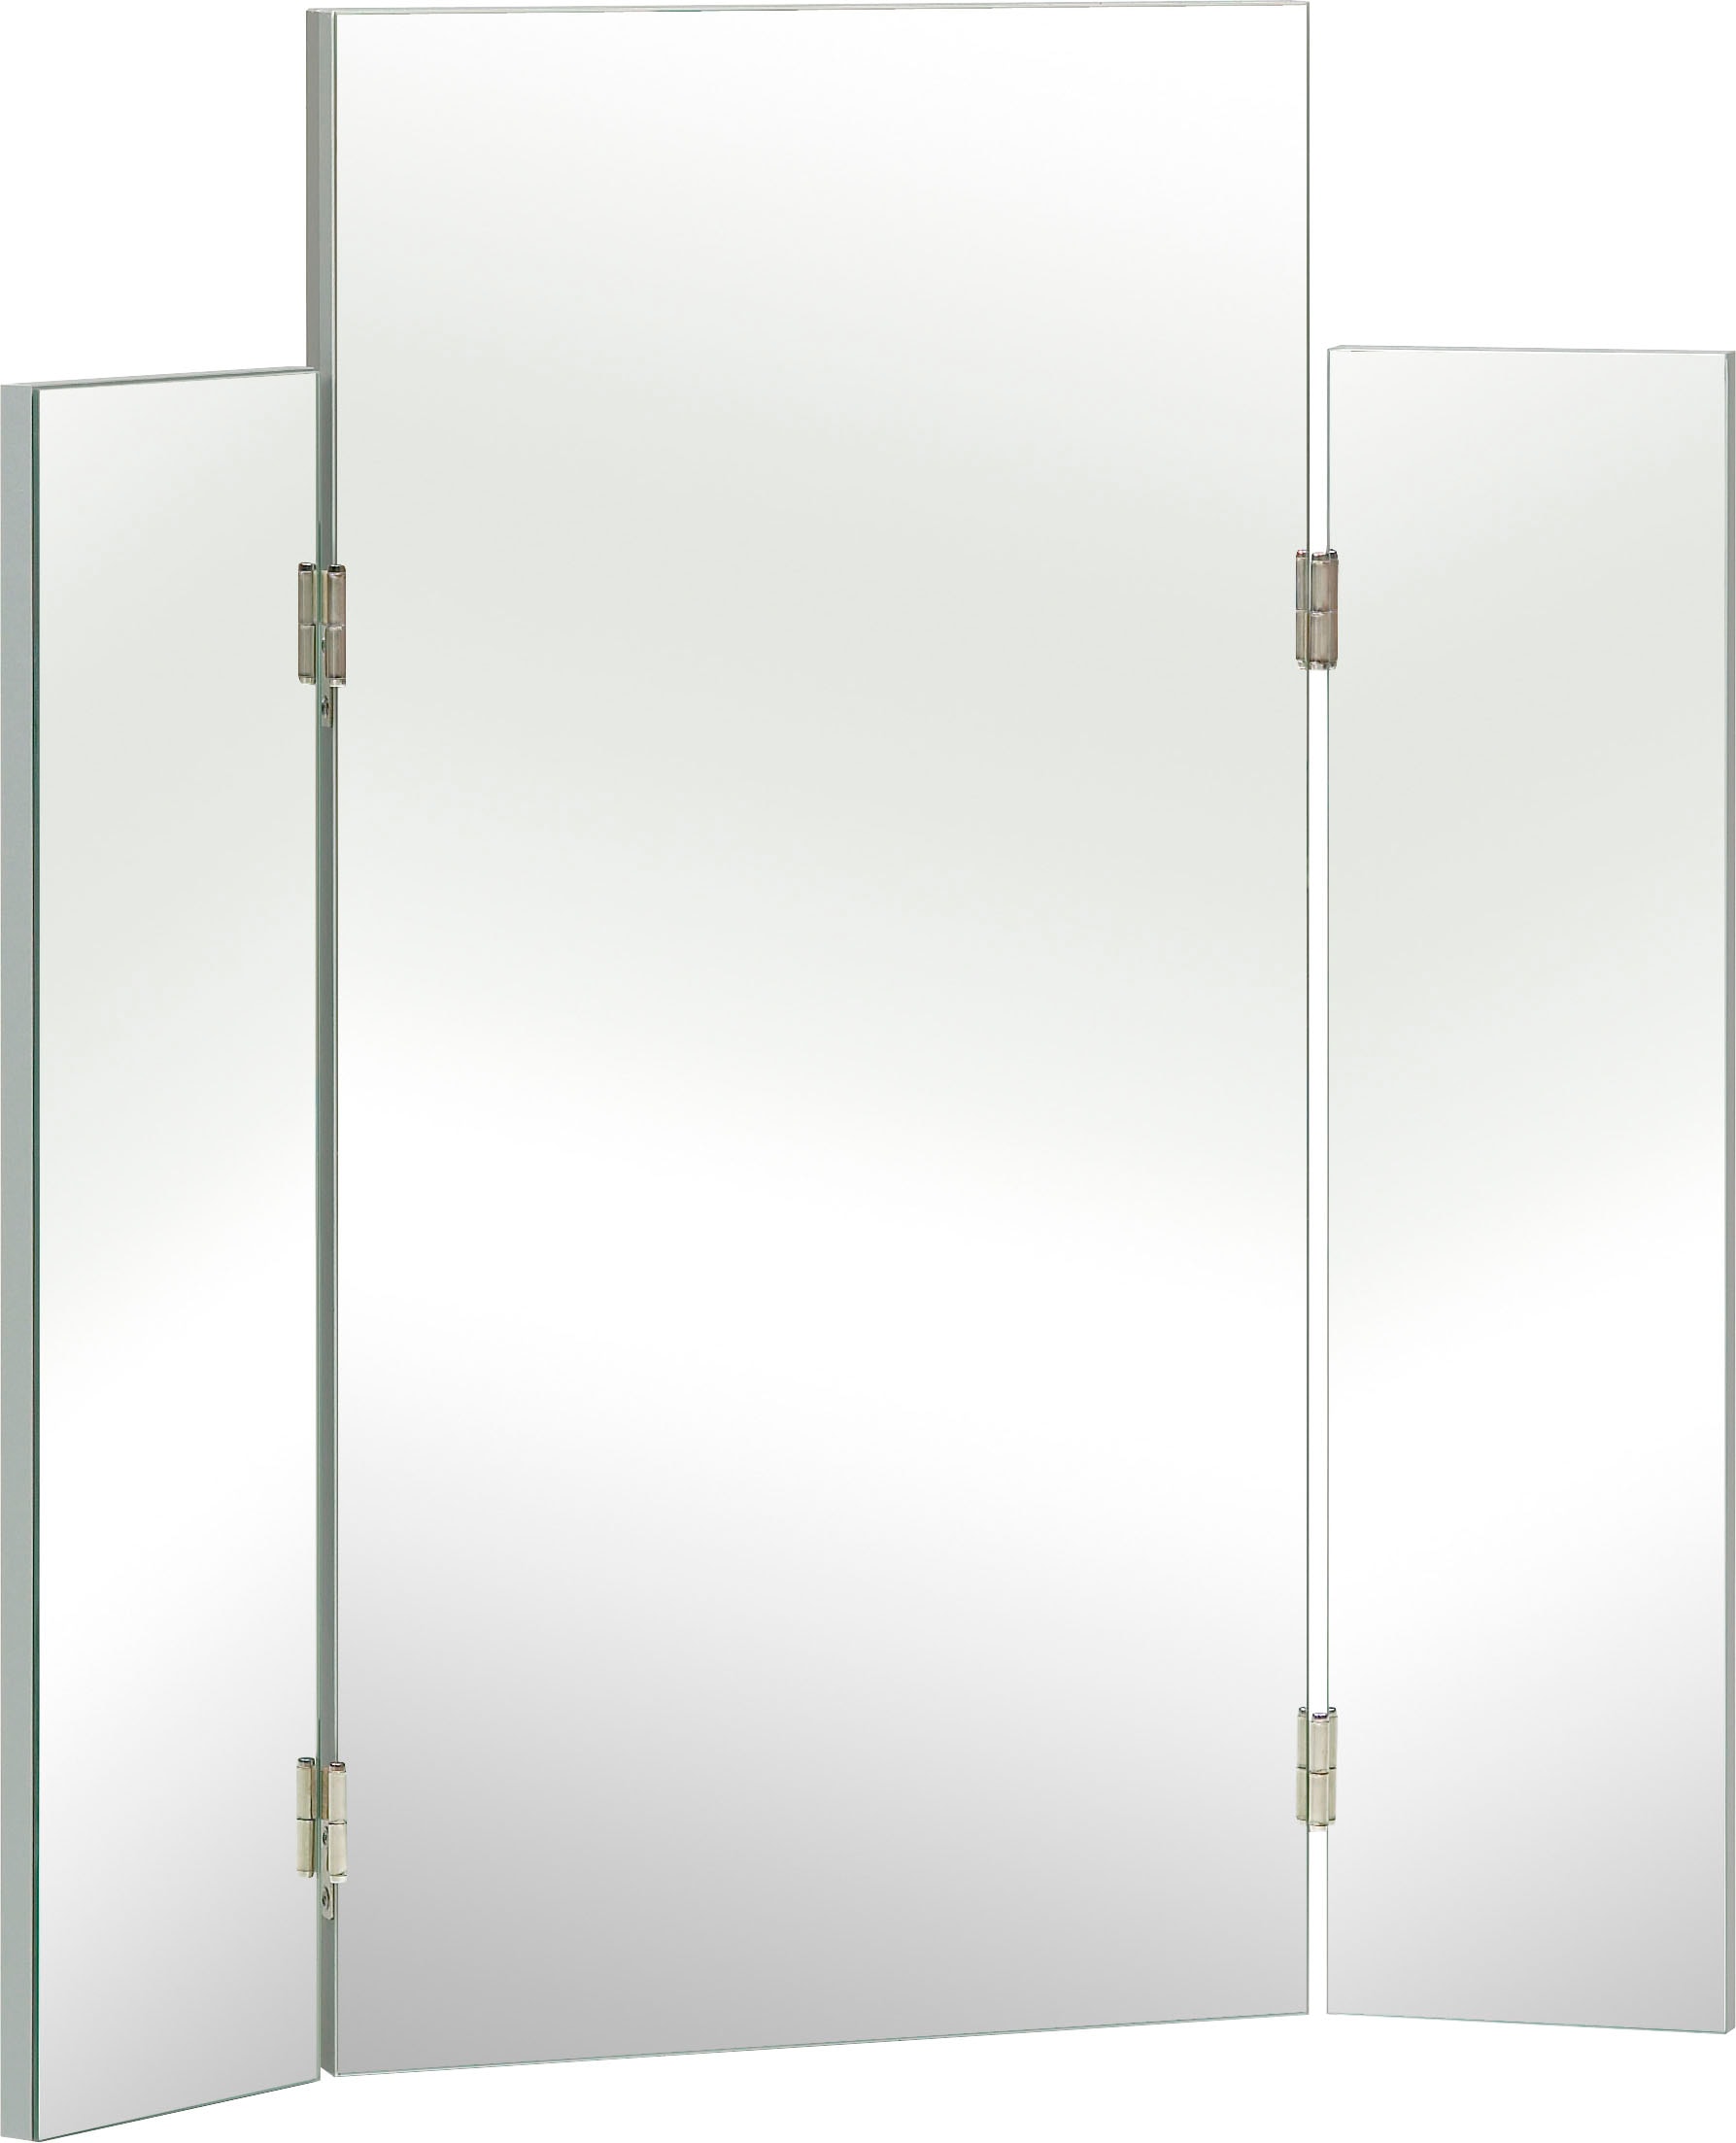 Saphir Spiegel »Quickset 955 Spiegel mit seitlichen Klappelementen, 72 cm breit«, Flächenspiegel ohne Beleuchtung, Wandspiegel, Schminkspiegel